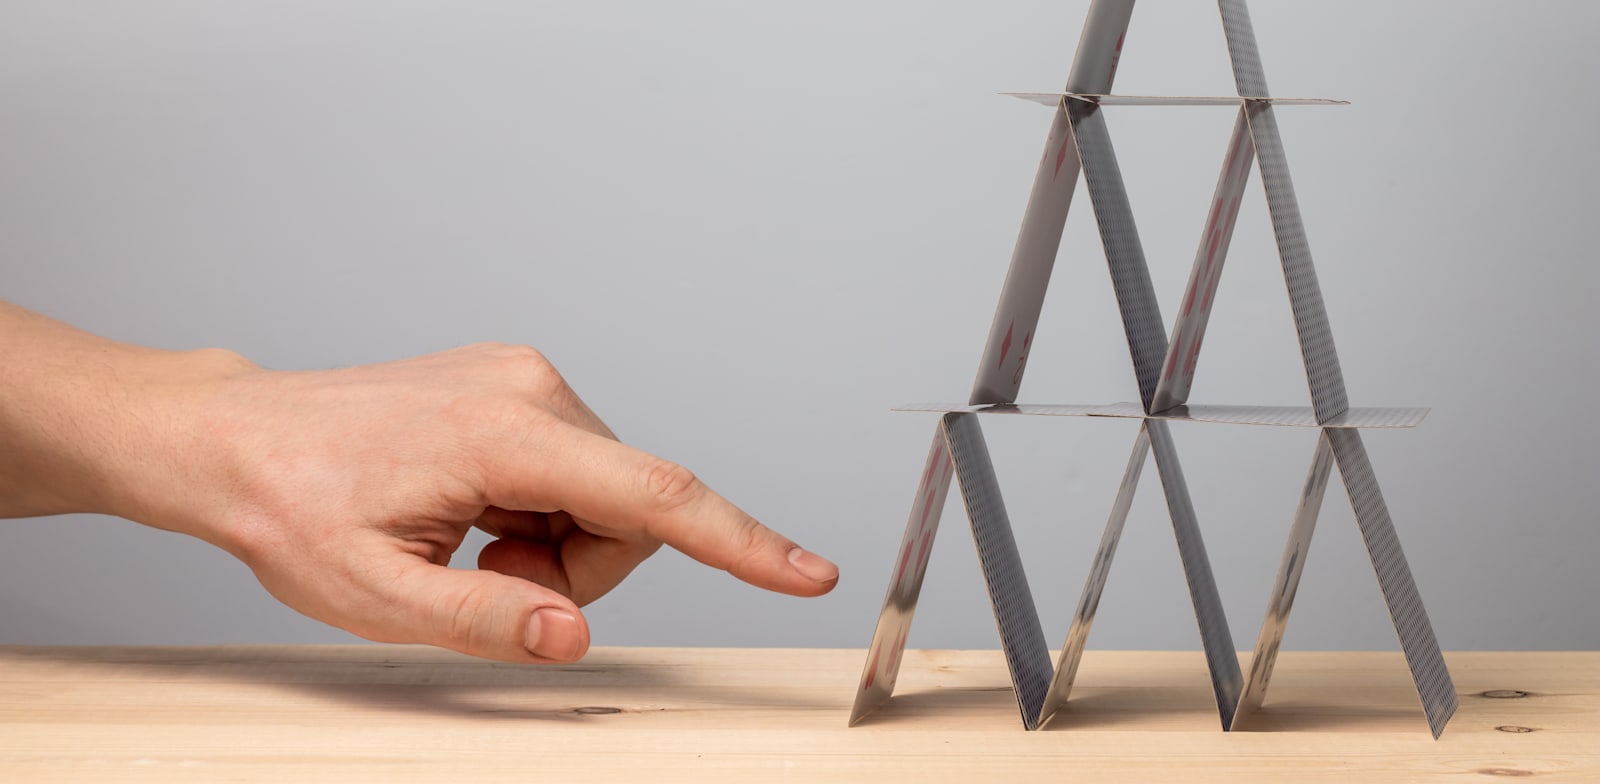 ערבוב הנכסים שמאיים להפיל  את מגדל הקלפים של הקריפטו / אילוסטרציה: Shutterstock, Igor Nikushin